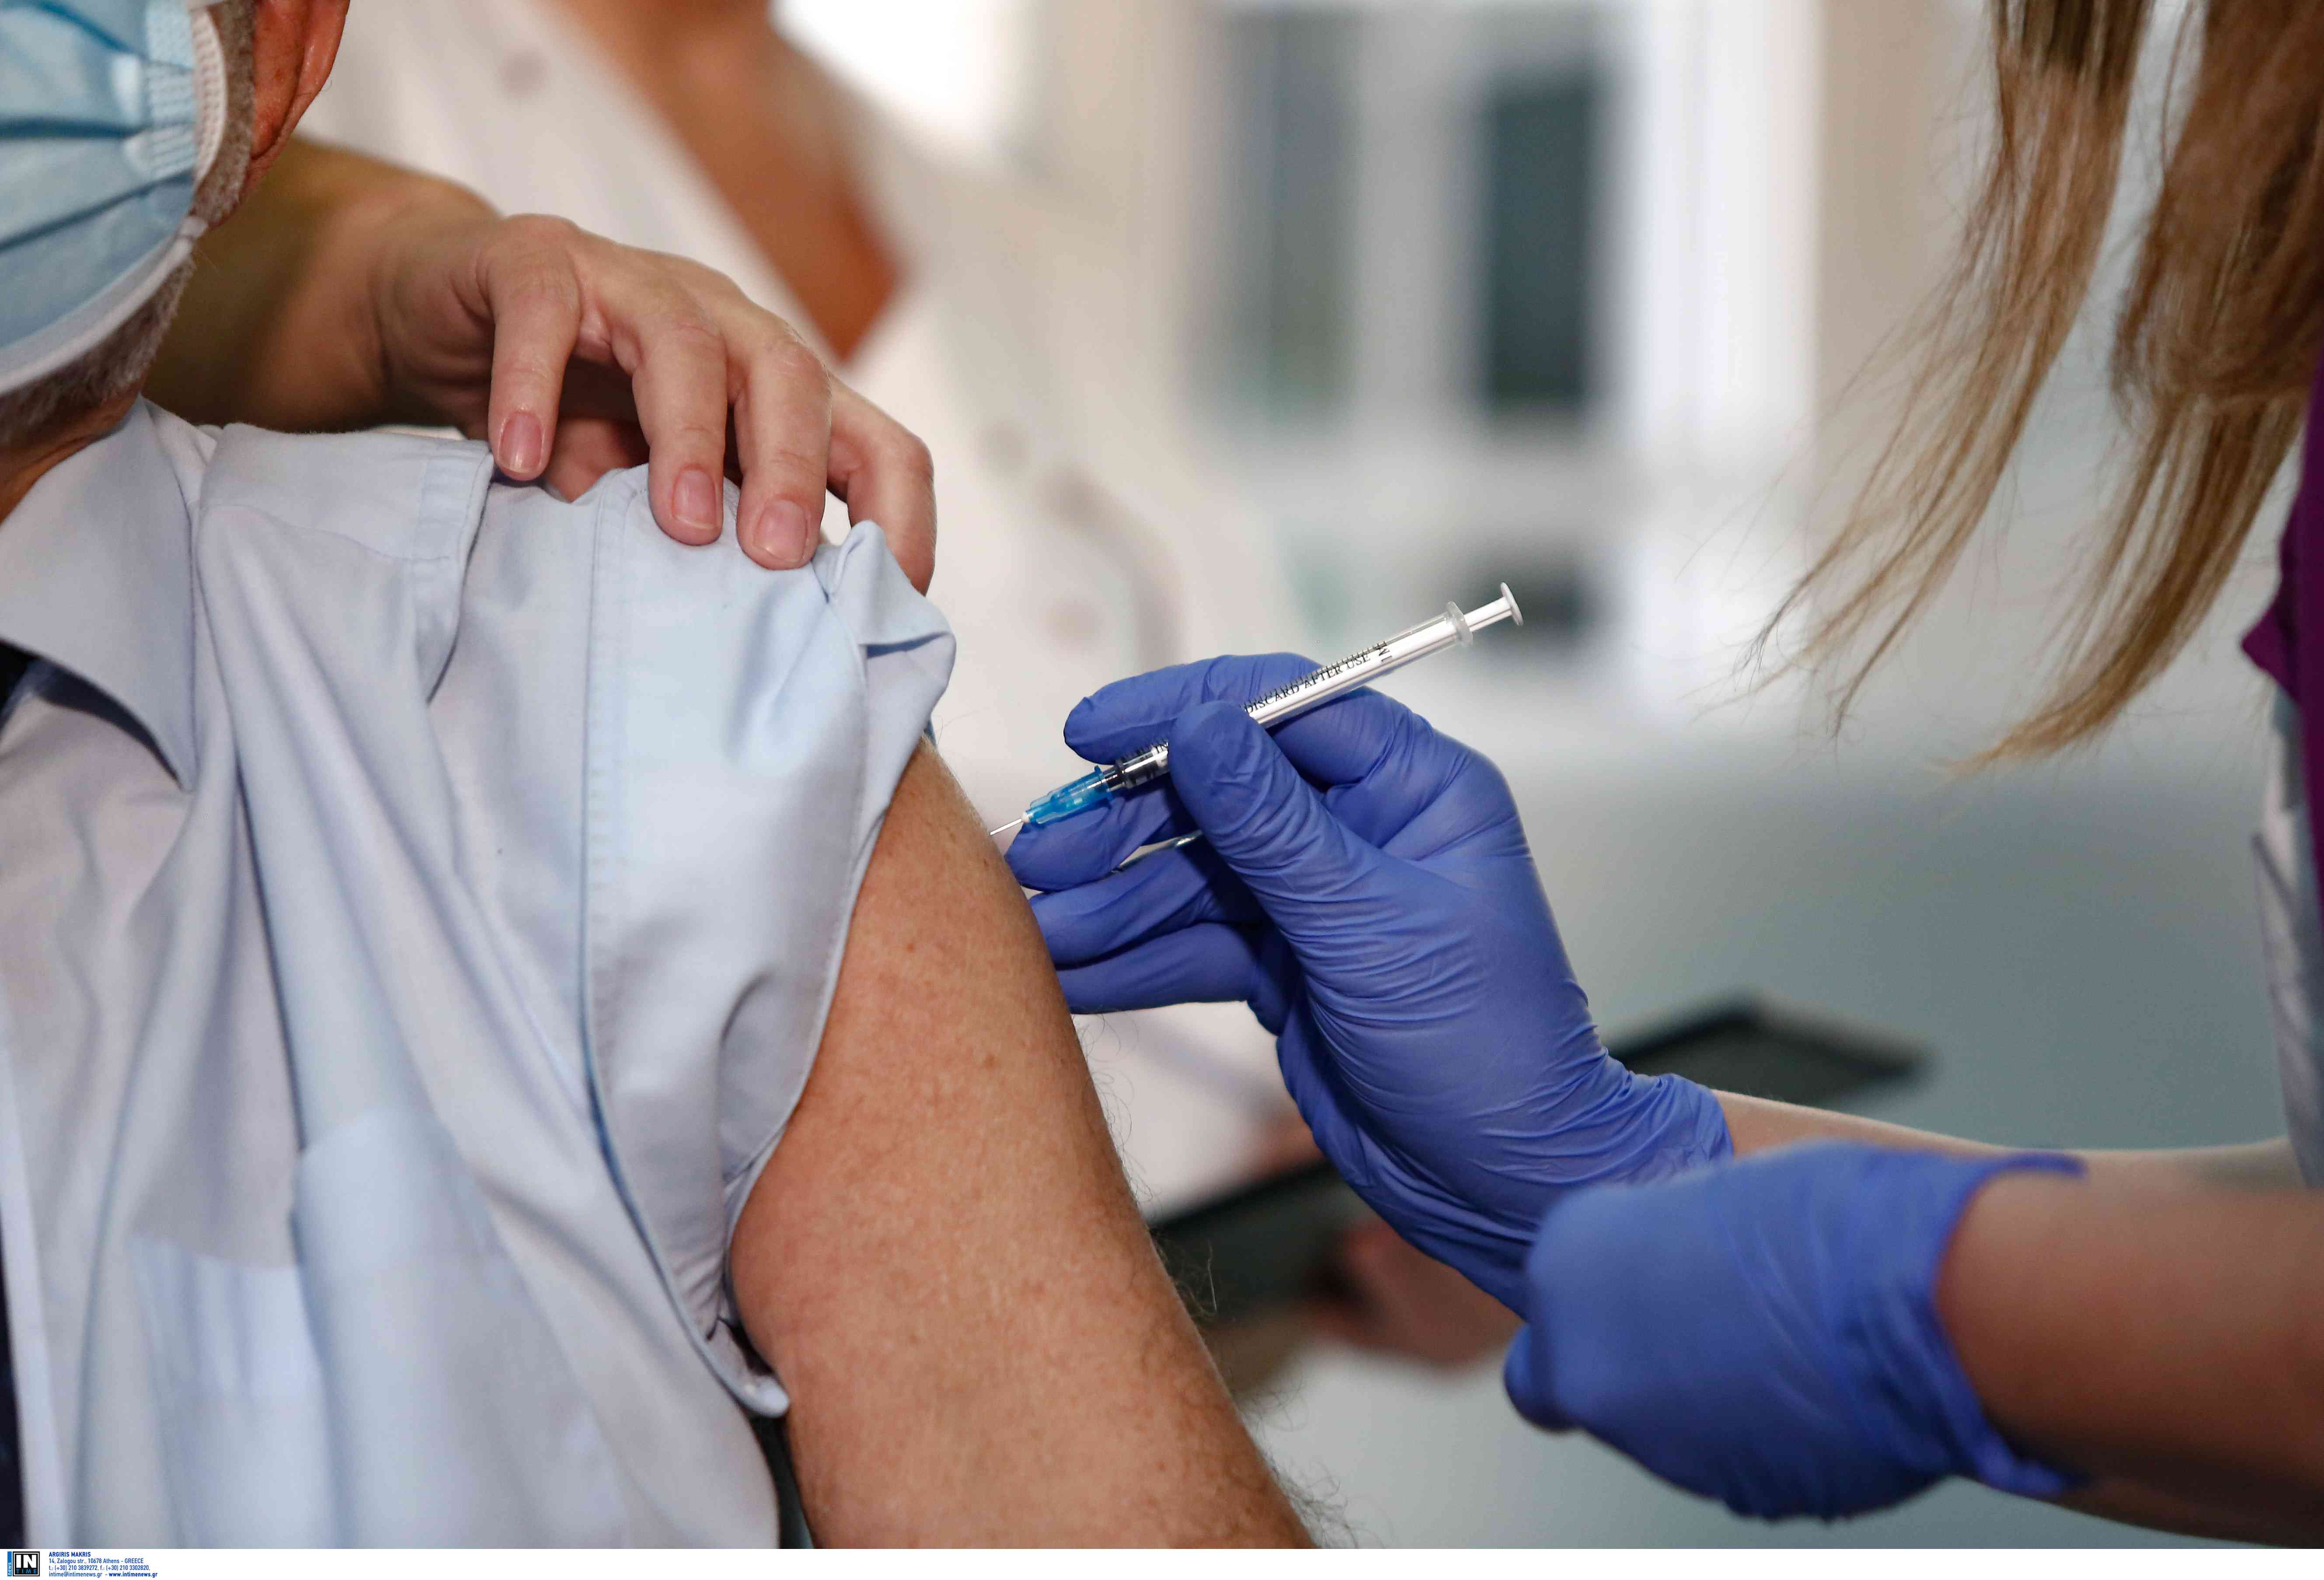 Γκίκας Μαγιορκίνης: “Οι ηλικιωμένοι να ακολουθήσουν απαρέγκλιτα τον εμβολιασμό – Δεν υπάρχει αθώα παραλλαγή Covid-19”